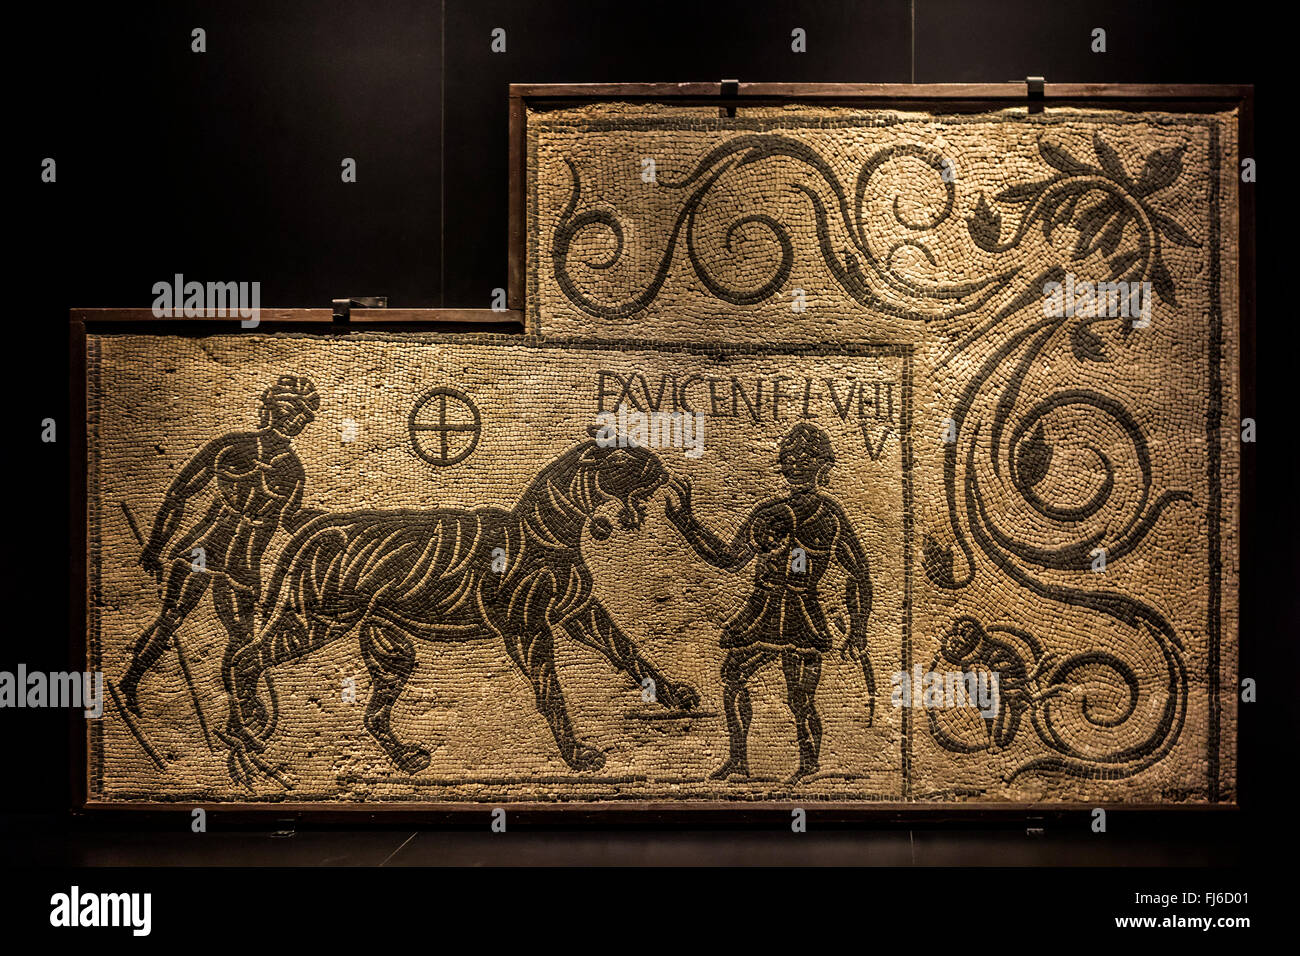 Fragment de mosaïque représentant le tigre et deux bestiarii / venatores dans l'ancienne Rome, Italie, 100-200 AD Banque D'Images